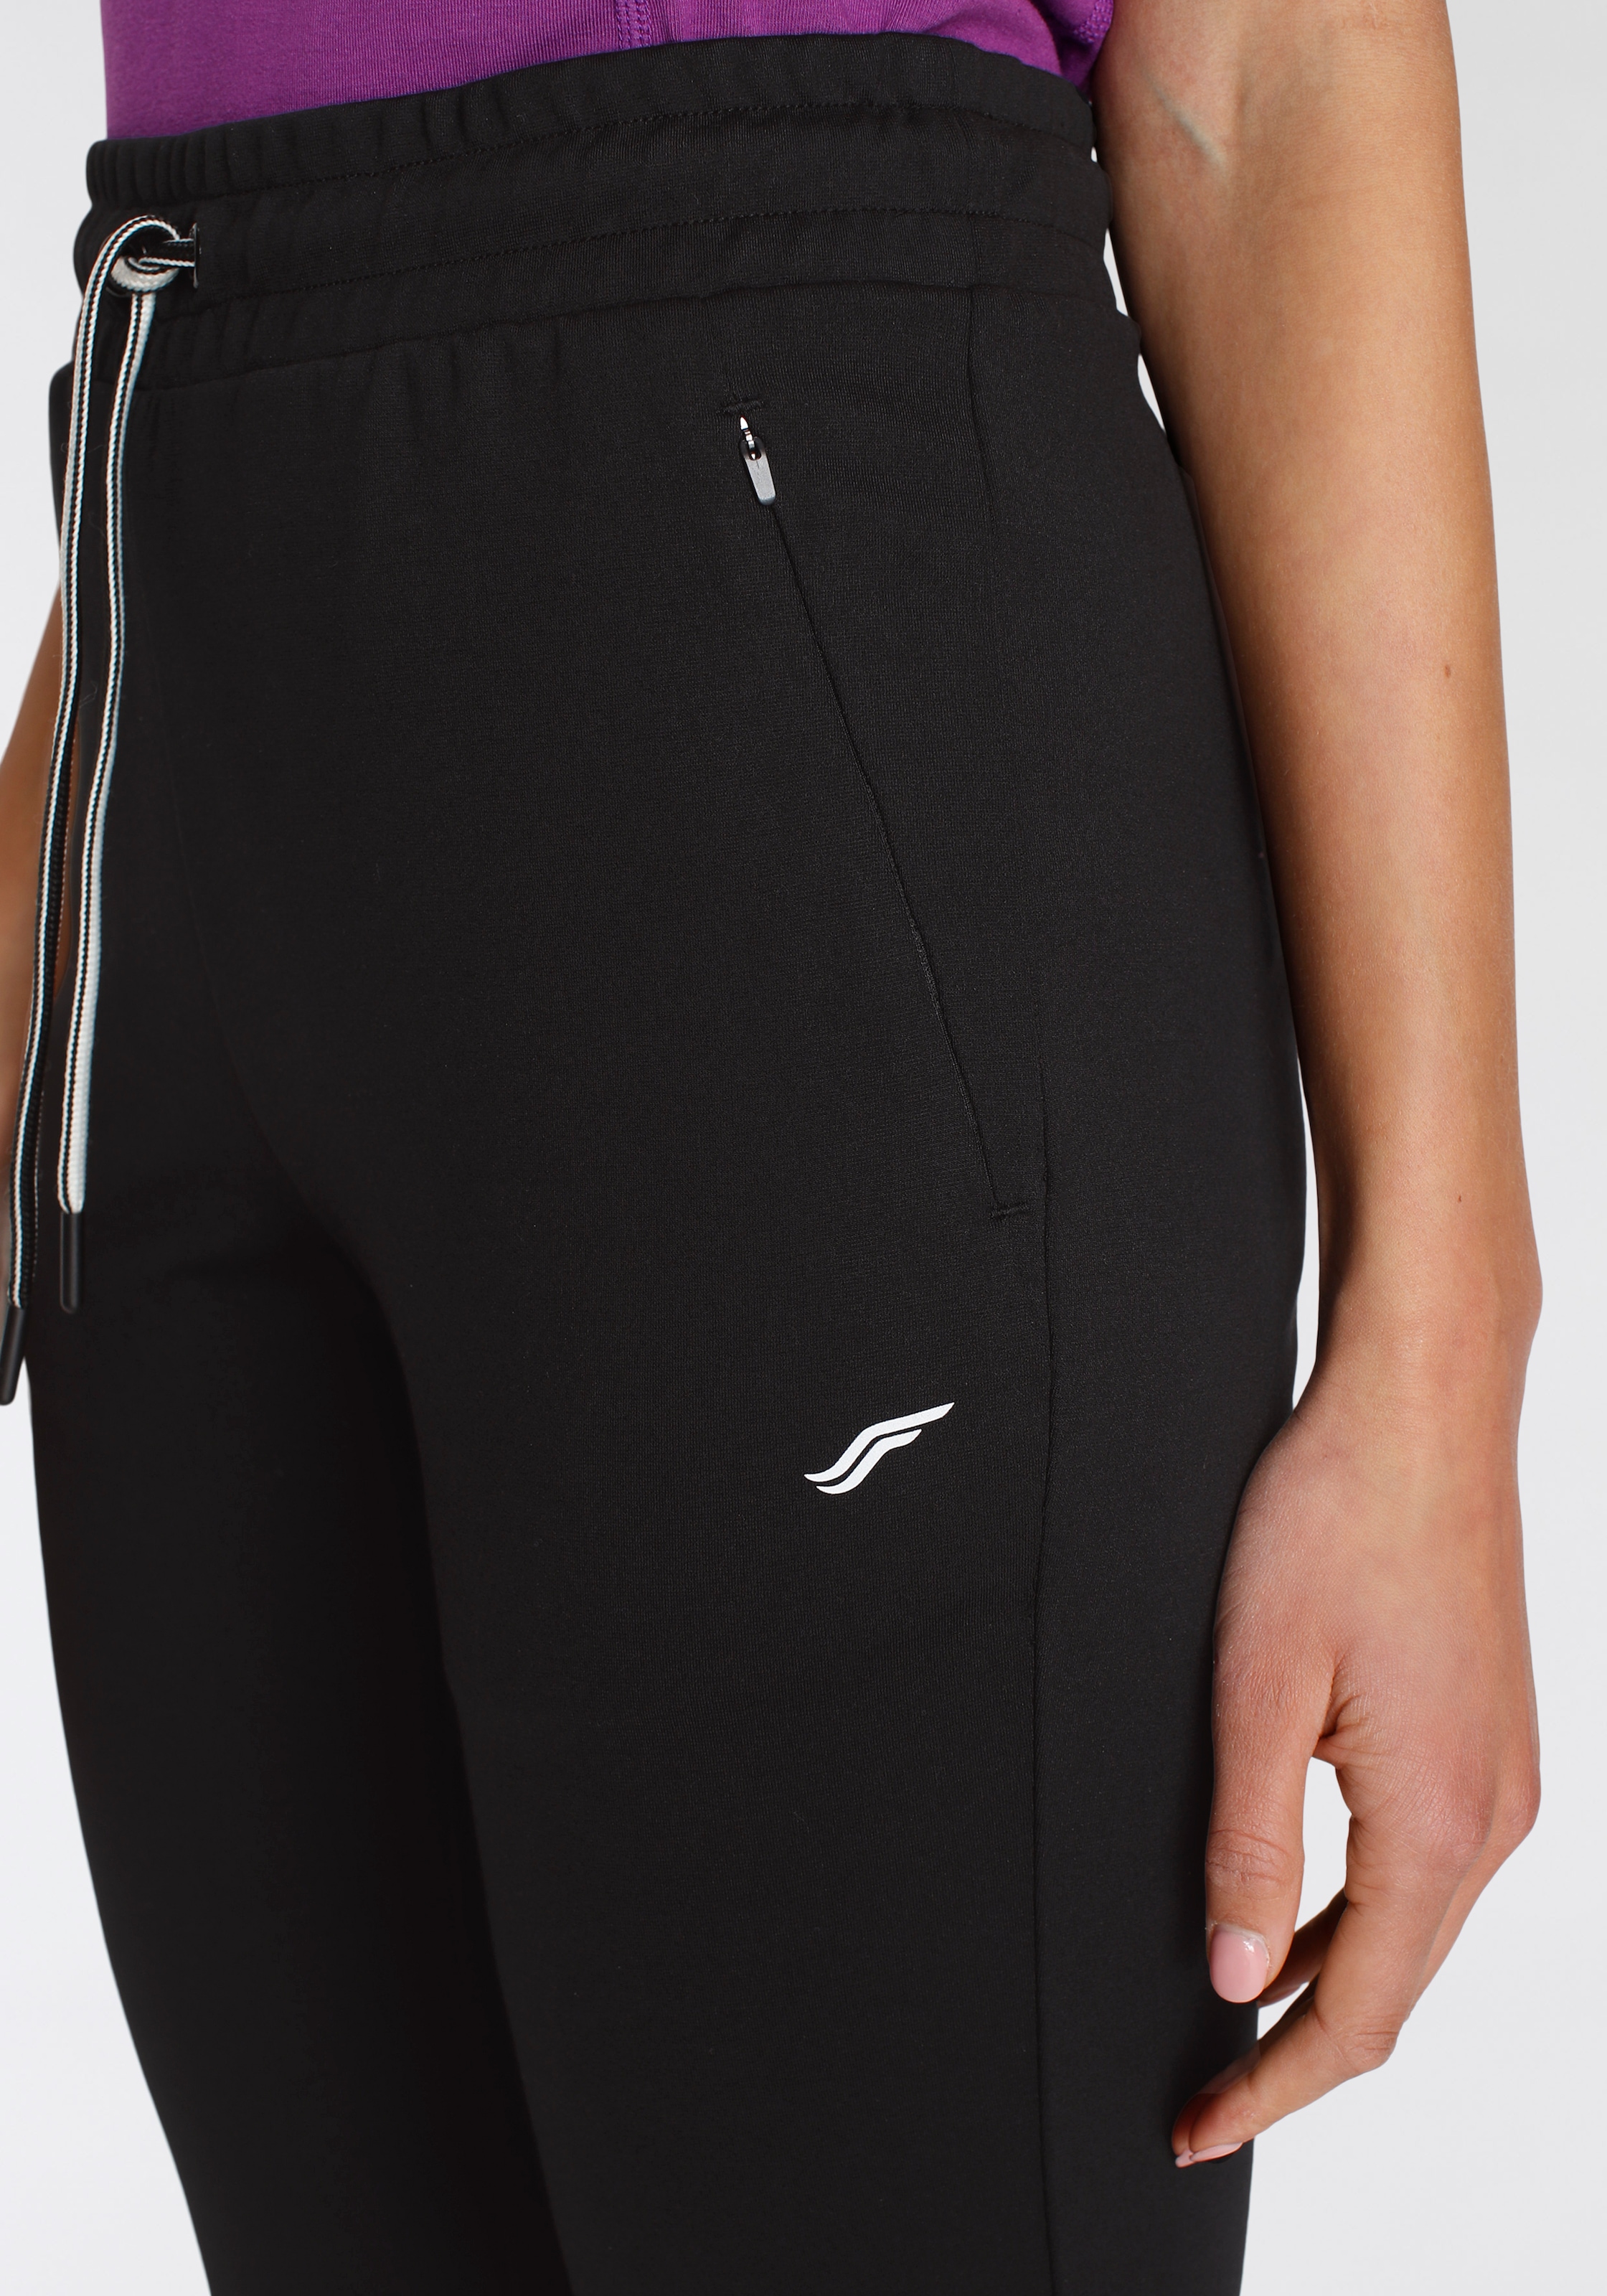 FAYN SPORTS Jogginghose mit Reißverschlusstaschen online kaufen »Relaxed Fit«